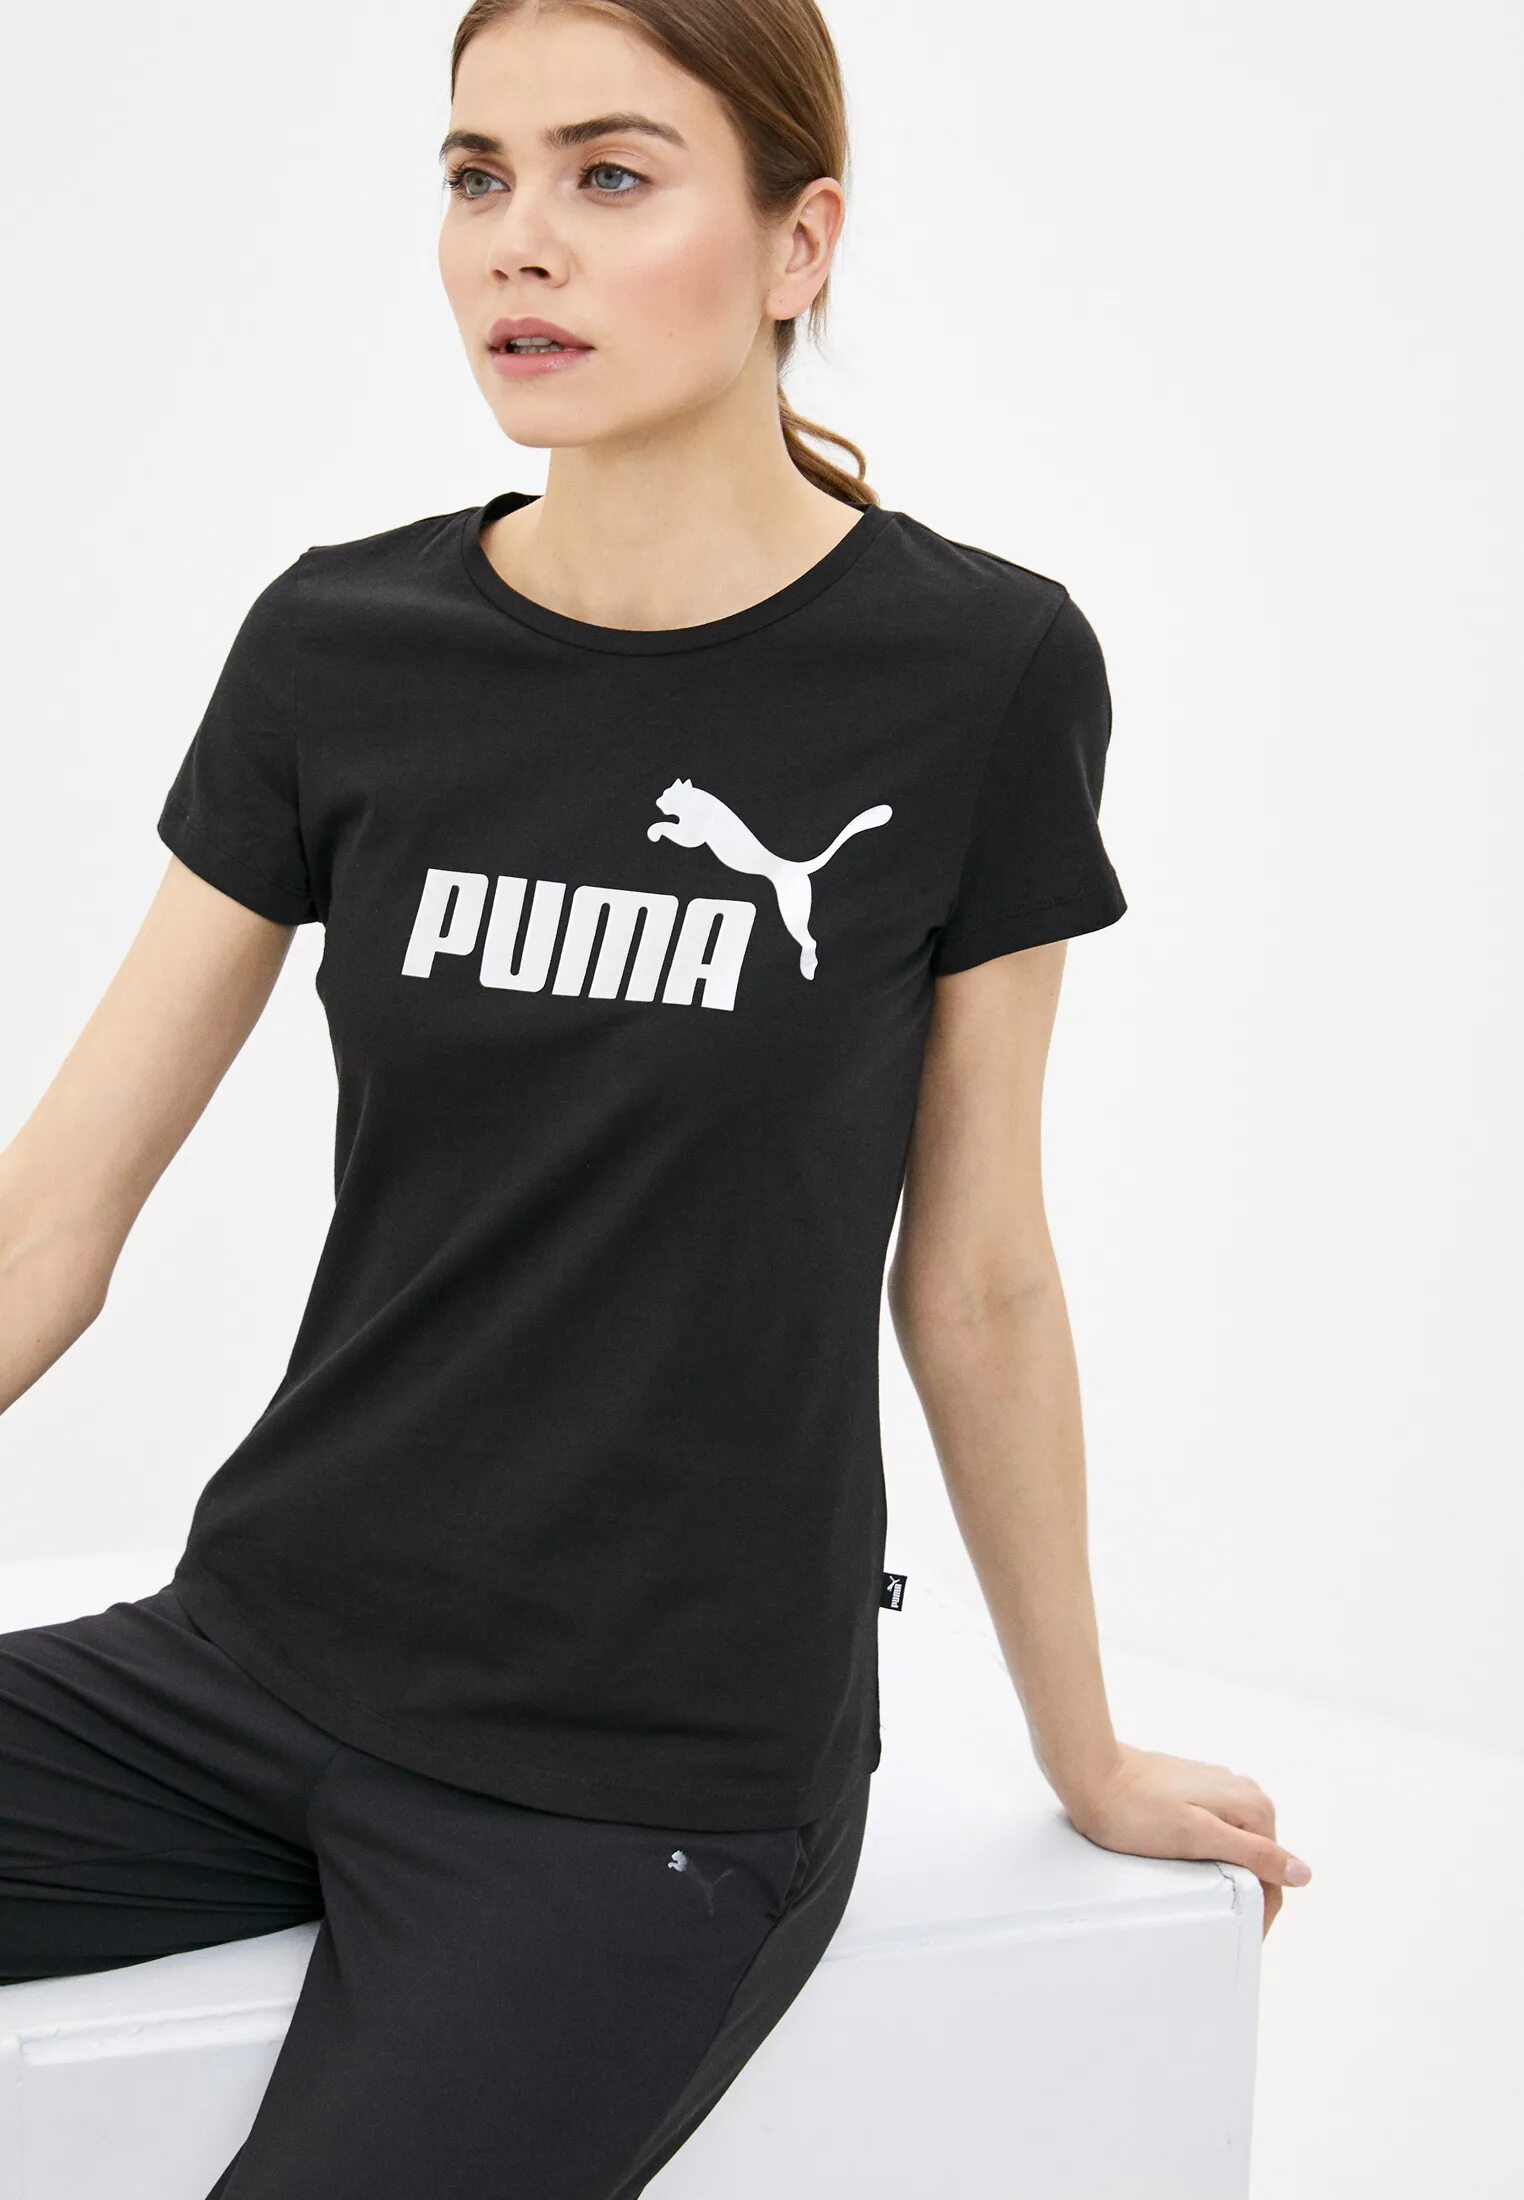 Спортивный магазин проводит акцию любая футболка стоит. Футболка женская Puma ESS Cropped logo. Пума бренд женские футболки. Футболка Puma женская черная. Чернаяфутболкапунеженская.